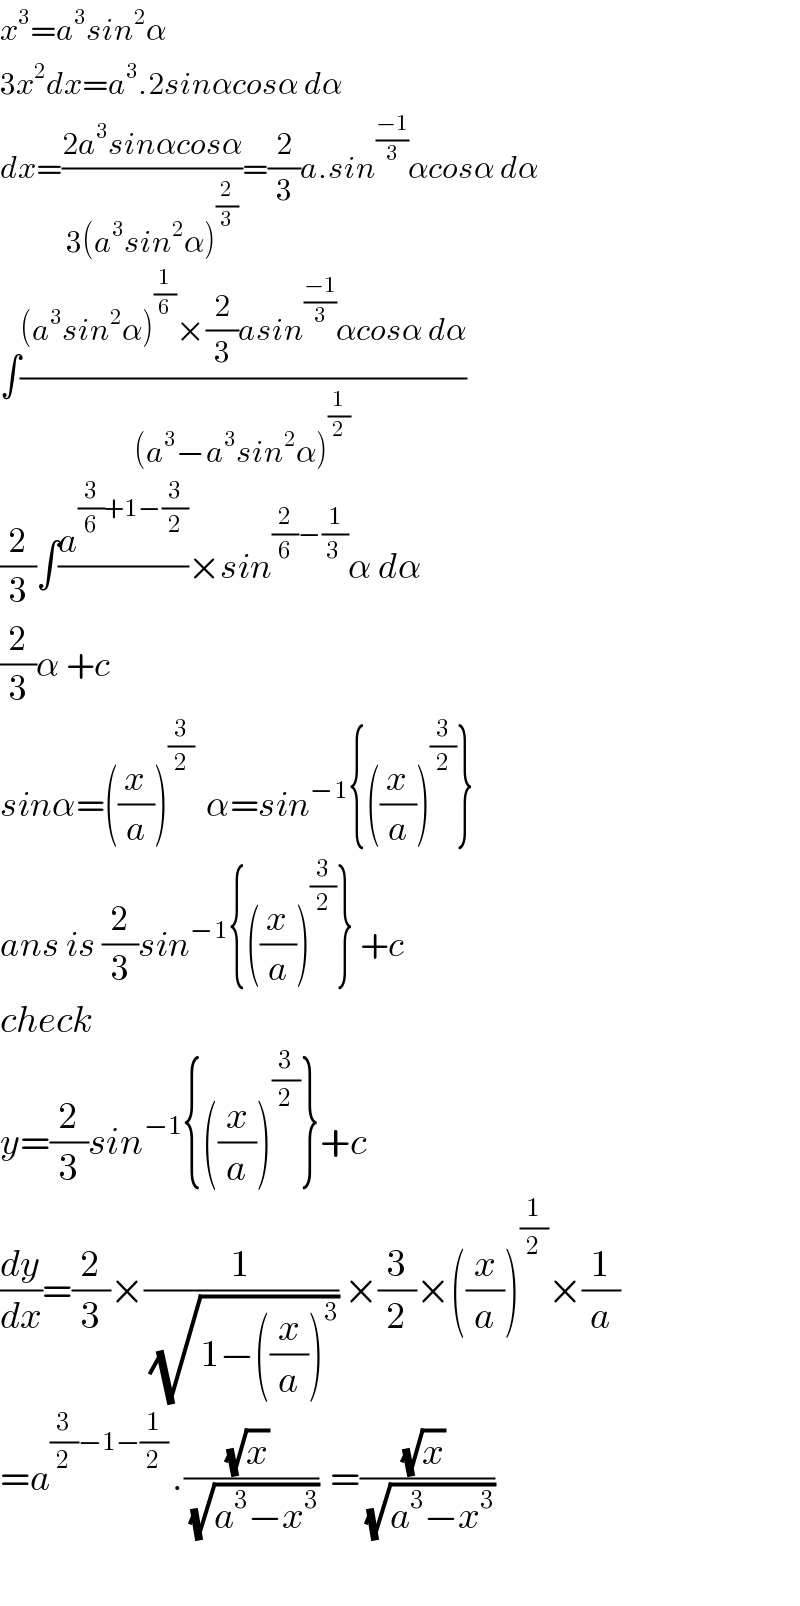 x^3 =a^3 sin^2 α  3x^2 dx=a^3 .2sinαcosα dα  dx=((2a^3 sinαcosα)/(3(a^3 sin^2 α)^(2/3) ))=(2/3)a.sin^((−1)/3) αcosα dα  ∫(((a^3 sin^2 α)^(1/6) ×(2/3)asin^((−1)/3) αcosα dα)/((a^3 −a^3 sin^2 α)^(1/2) ))  (2/3)∫(a^((3/6)+1−(3/2)) /)×sin^((2/6)−(1/(3 ))) α dα  (2/3)α +c  sinα=((x/a))^(3/2)   α=sin^(−1) {((x/a))^(3/2) }  ans is (2/3)sin^(−1) {((x/a))^(3/2) } +c  check  y=(2/3)sin^(−1) {((x/a))^(3/2) }+c  (dy/dx)=(2/3)×(1/(√(1−((x/a))^3 ))) ×(3/2)×((x/a))^(1/2) ×(1/a)  =a^((3/2)−1−(1/2) ) .(((√x) )/(√(a^3 −x^3 )))  =(((√x) )/(√(a^3 −x^3 )))     